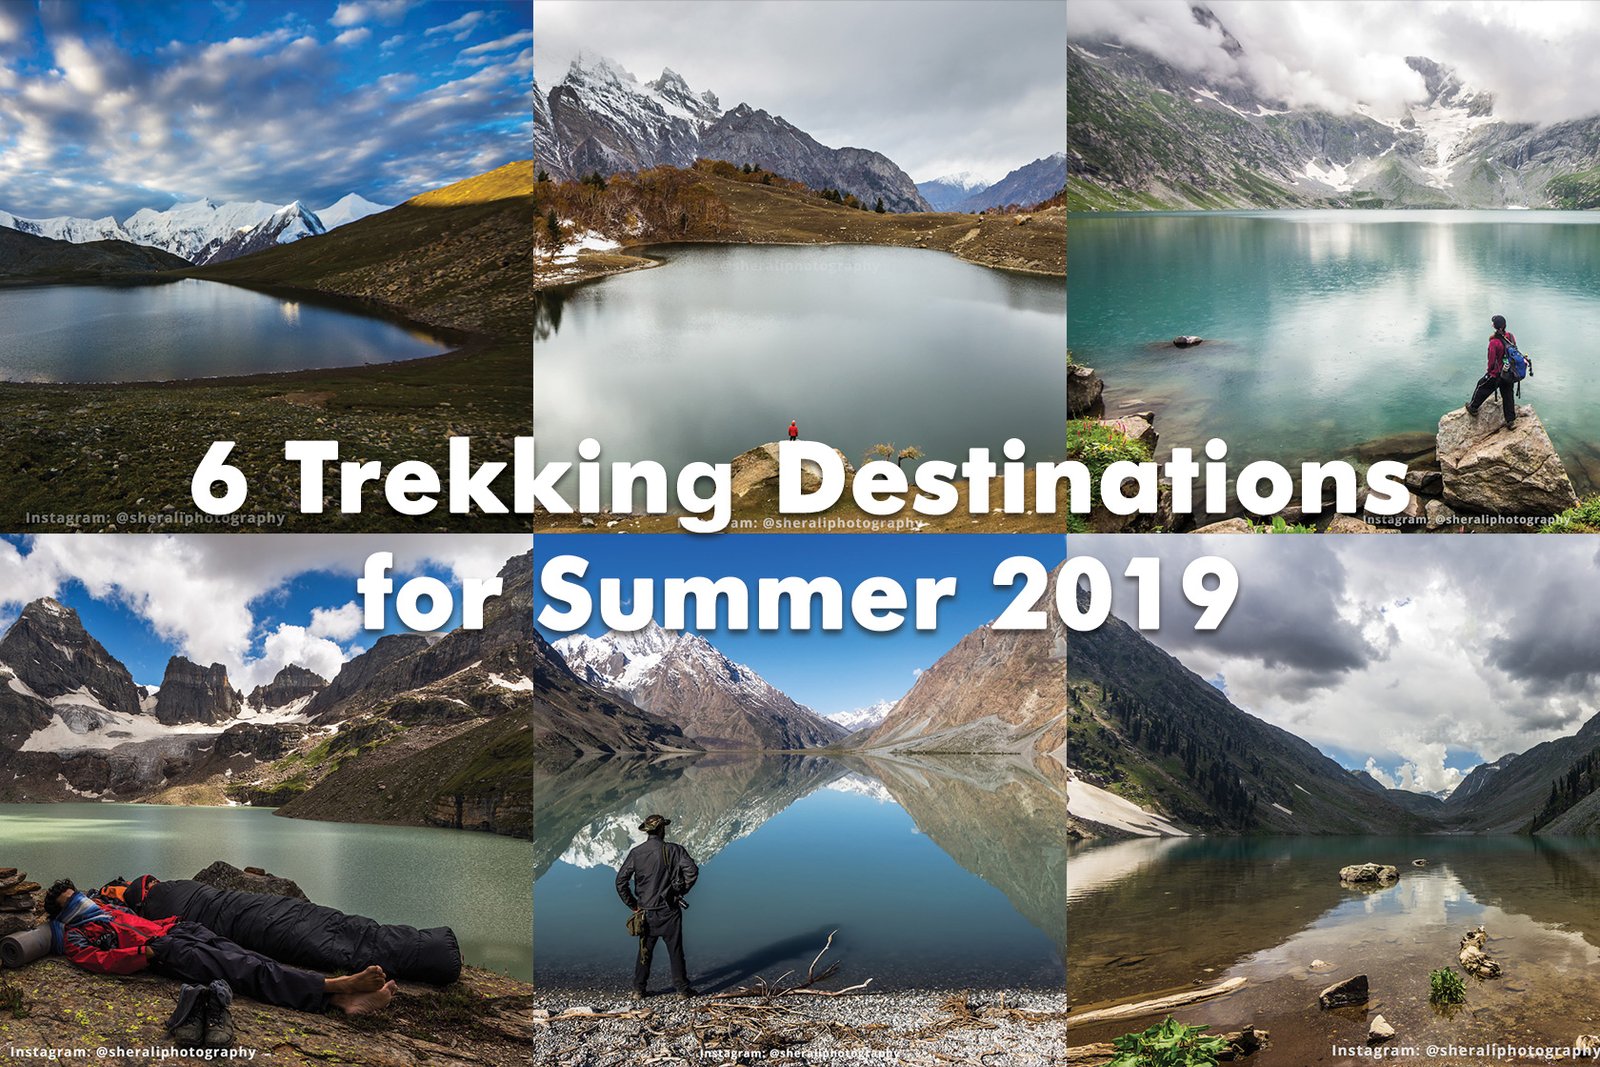 6 Trekking Destinations in Pakistan for Summer 2019